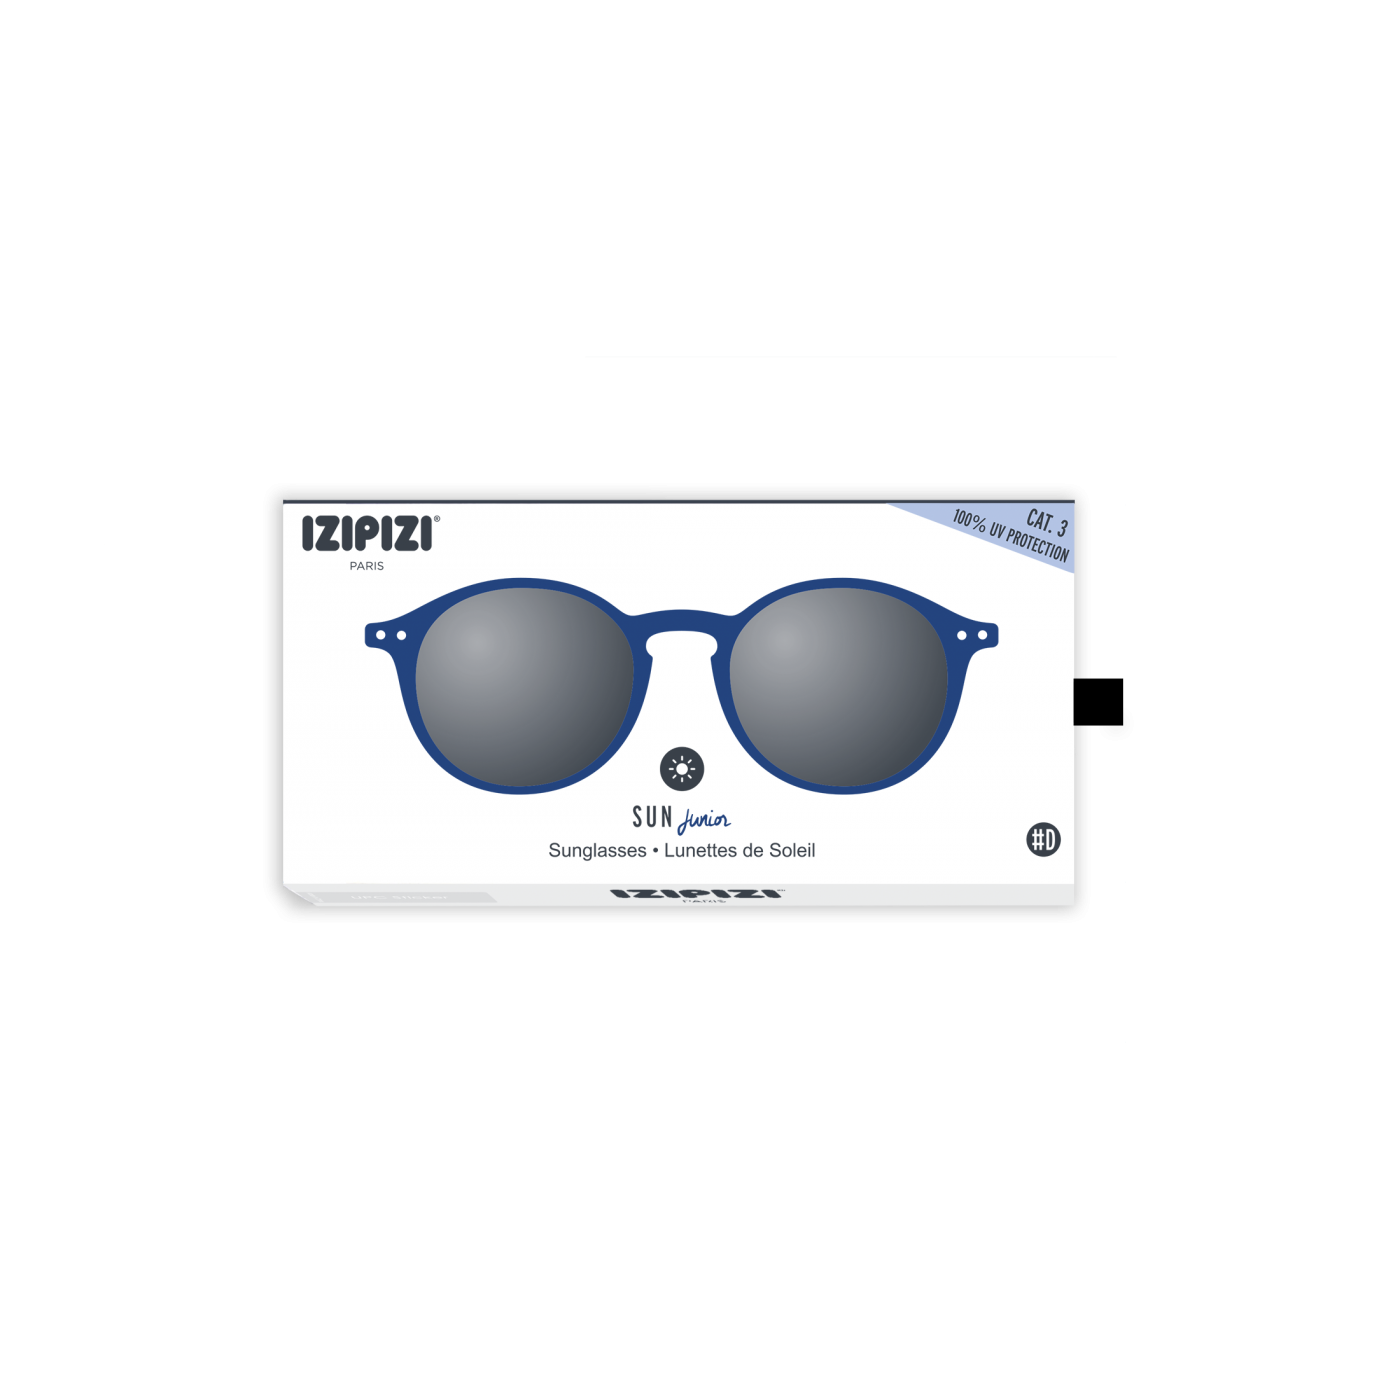 Óculos de Sol Navy Blue #D para crianças dos 5 aos 10 anos